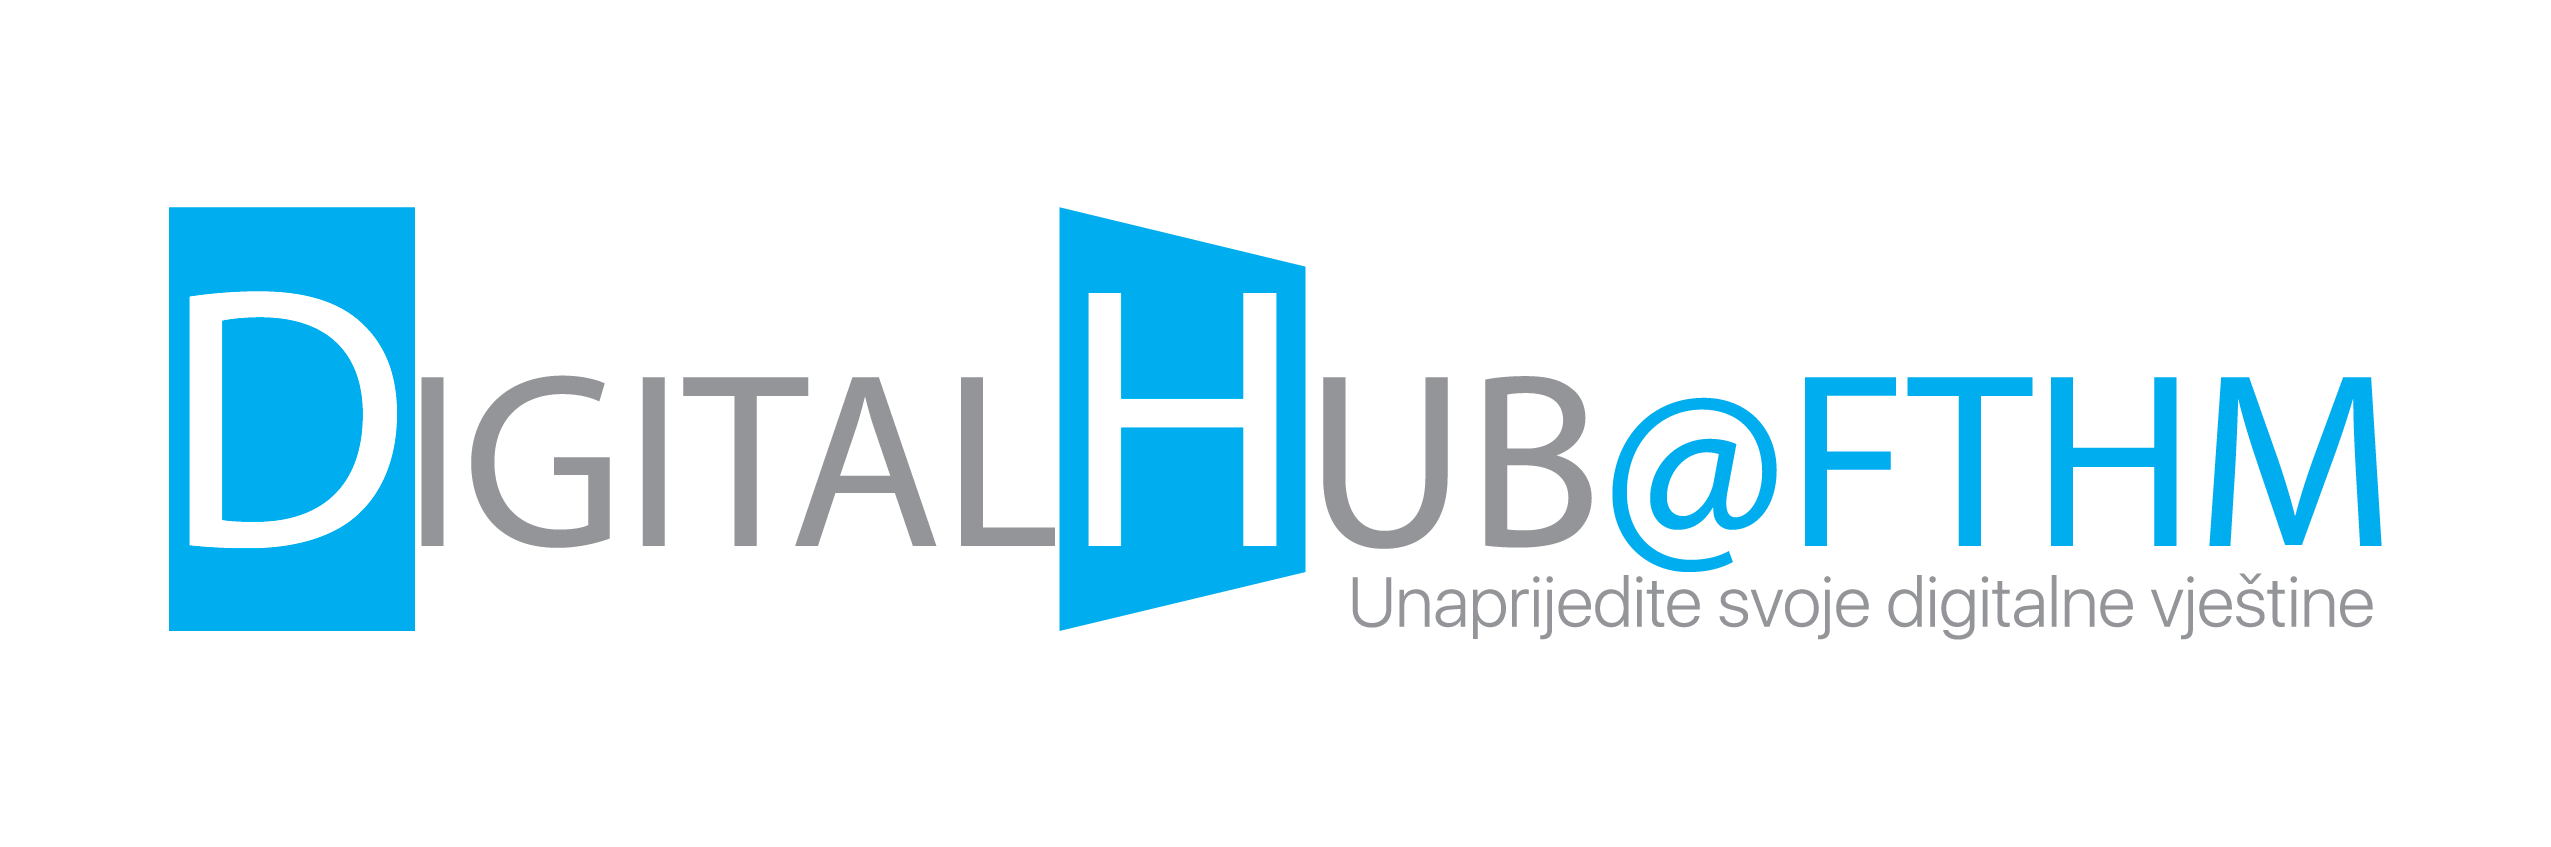 DigitalHub logo 02